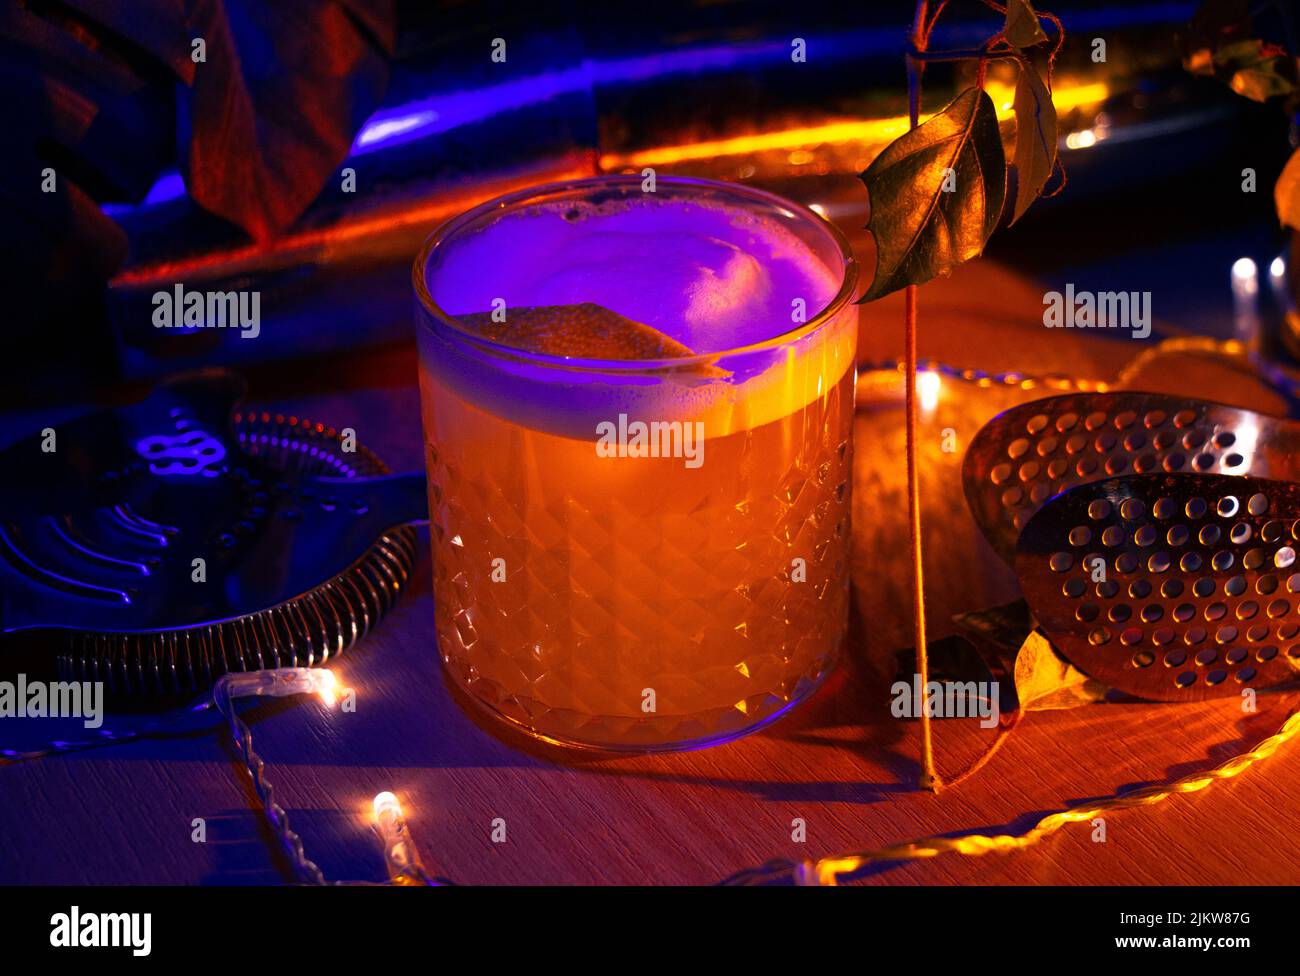 Eine Nahaufnahme eines Gin-Fizz-Cocktails, Zitronengarnitur und Barausstattung unter Neonlicht Stockfoto